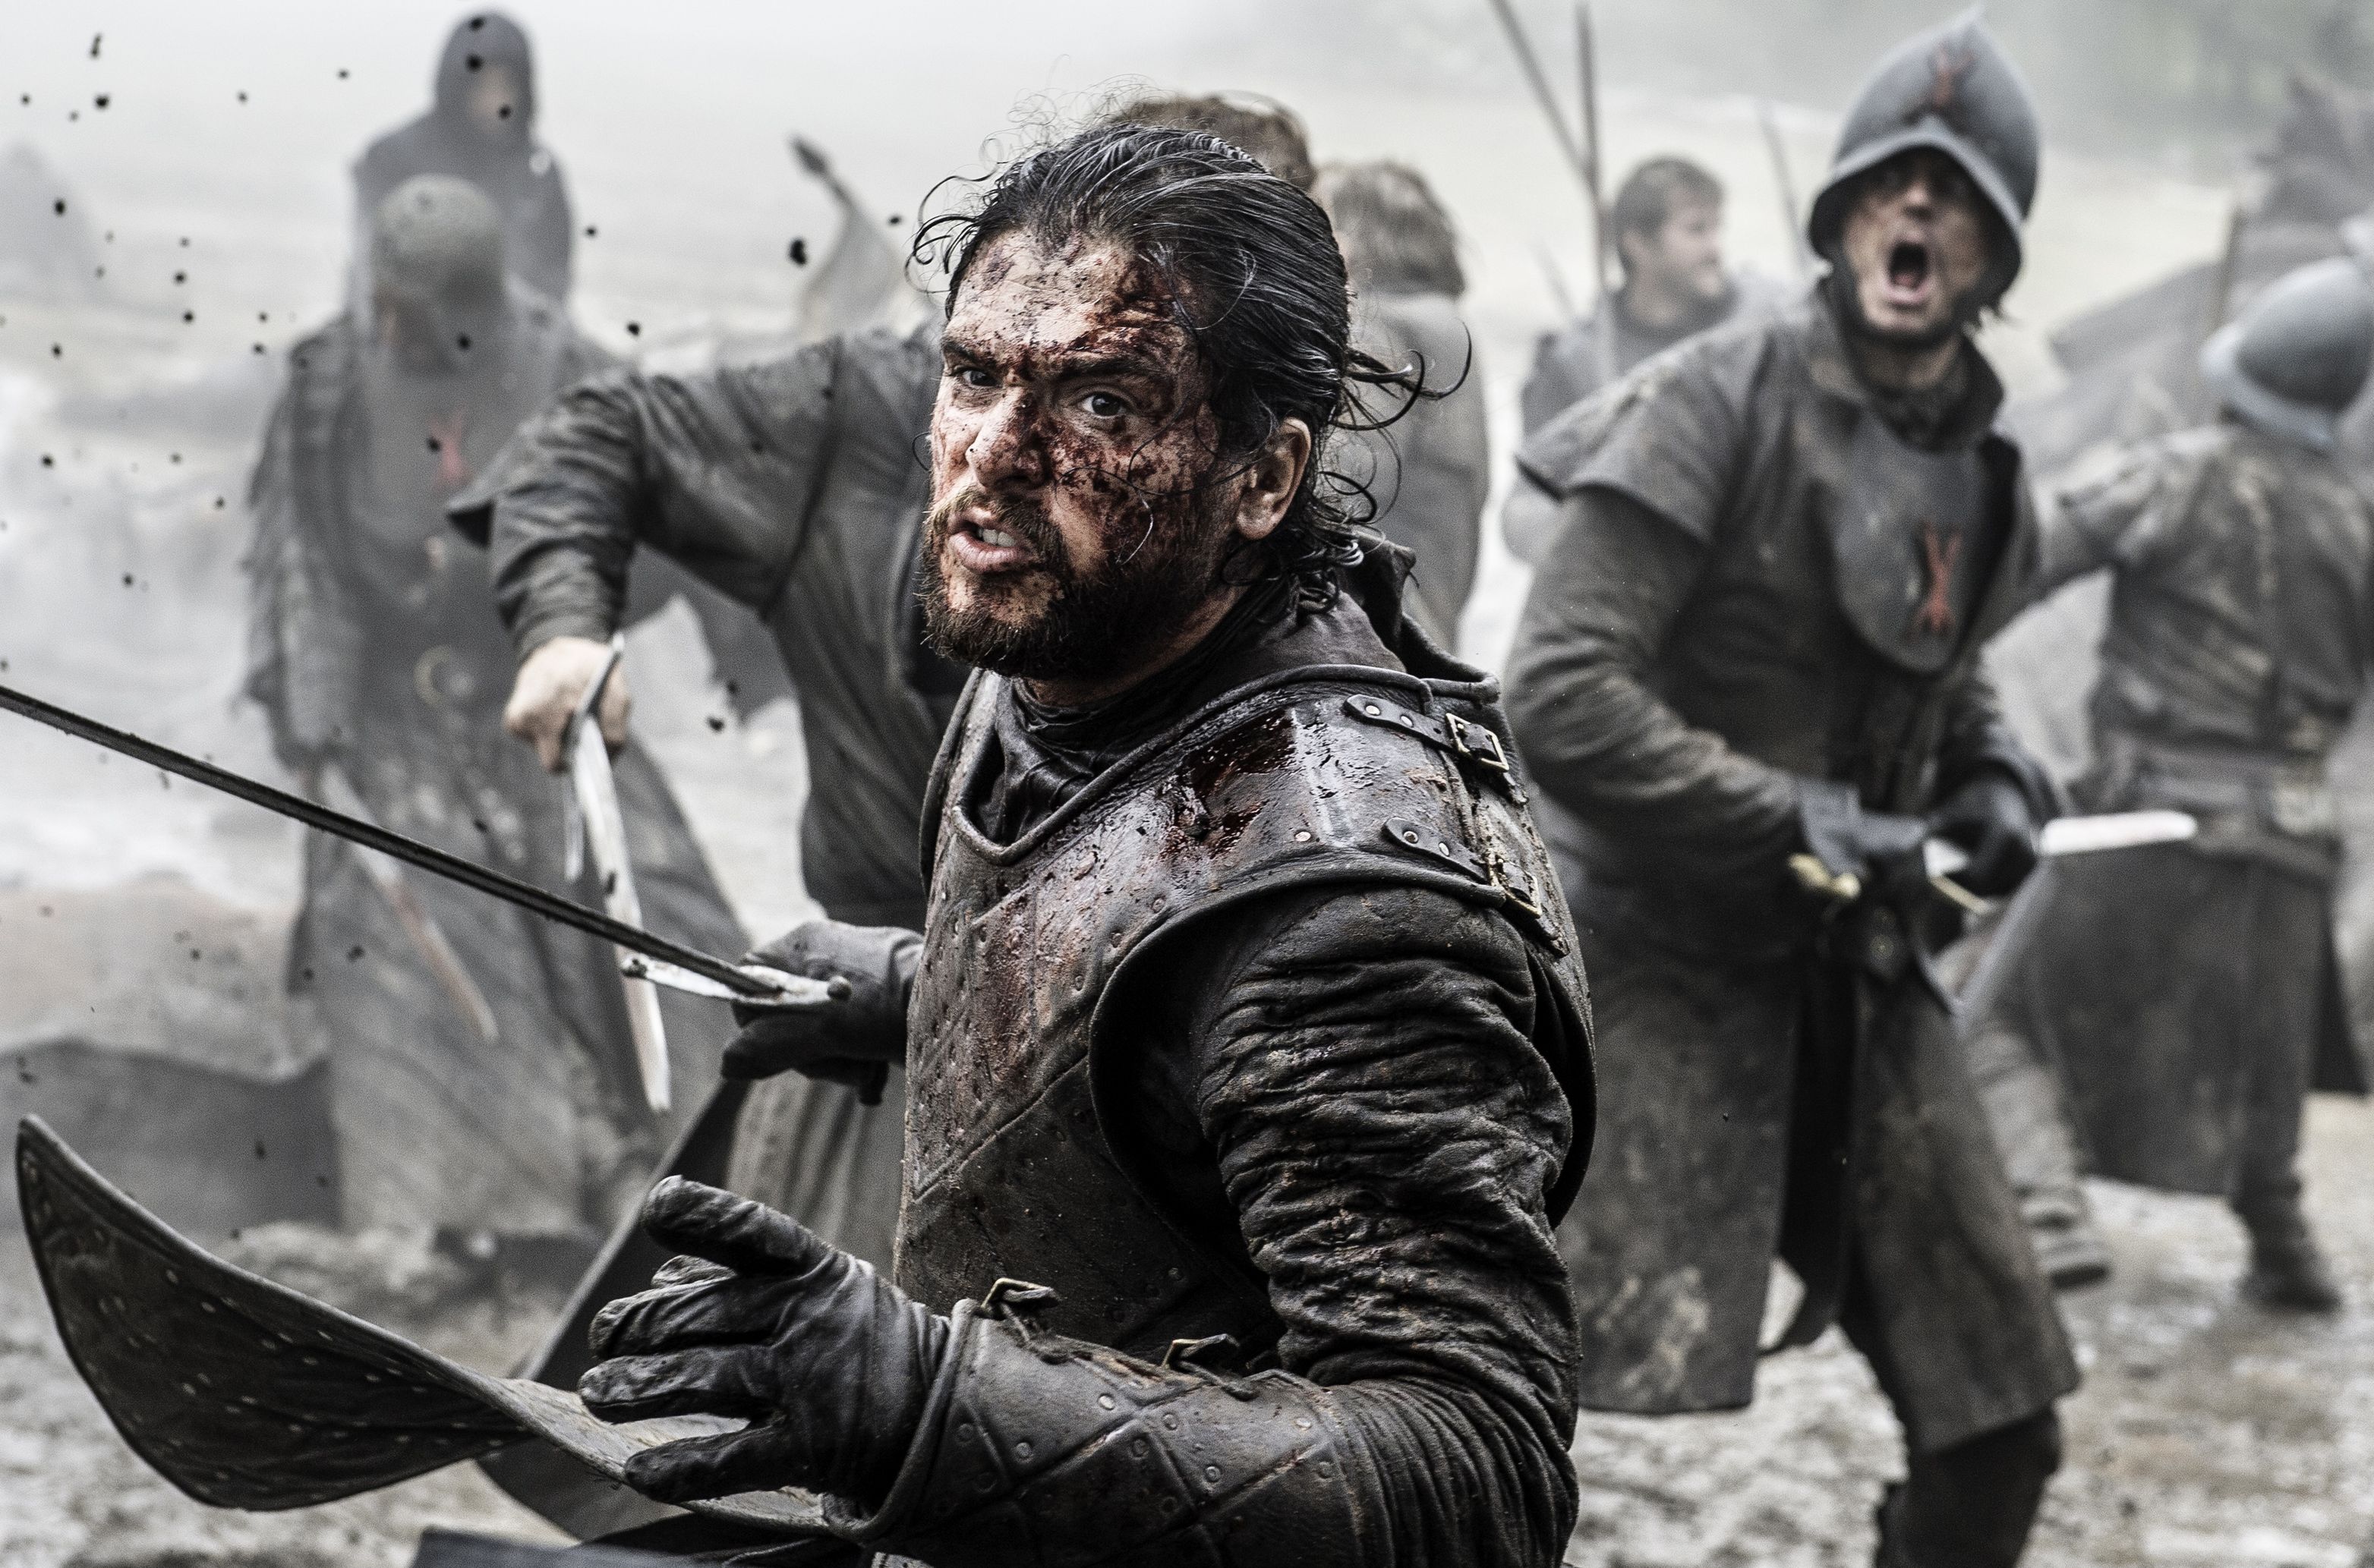 Kit Harington as Jon Snow in "The Battle of the Bastards"